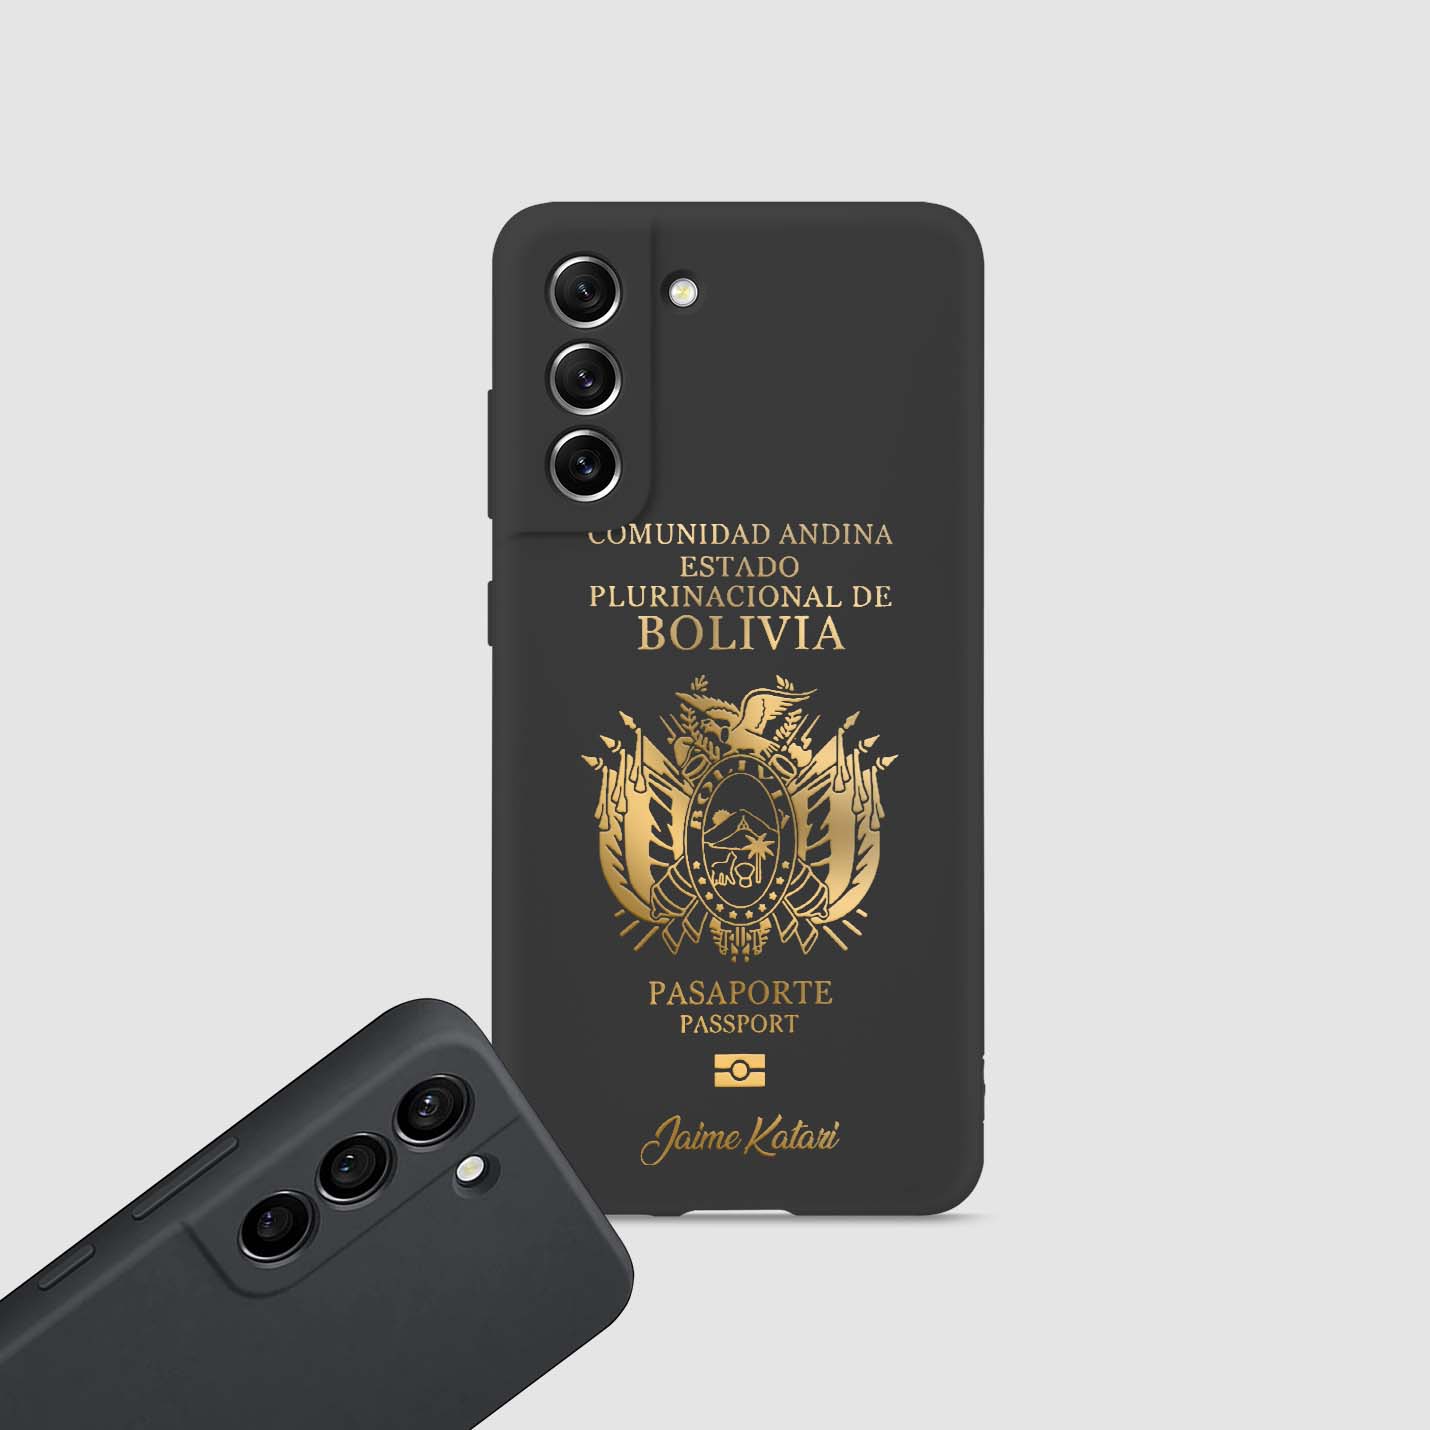 Handyhüllen mit Reisepass - Bolivien - 1instaphone